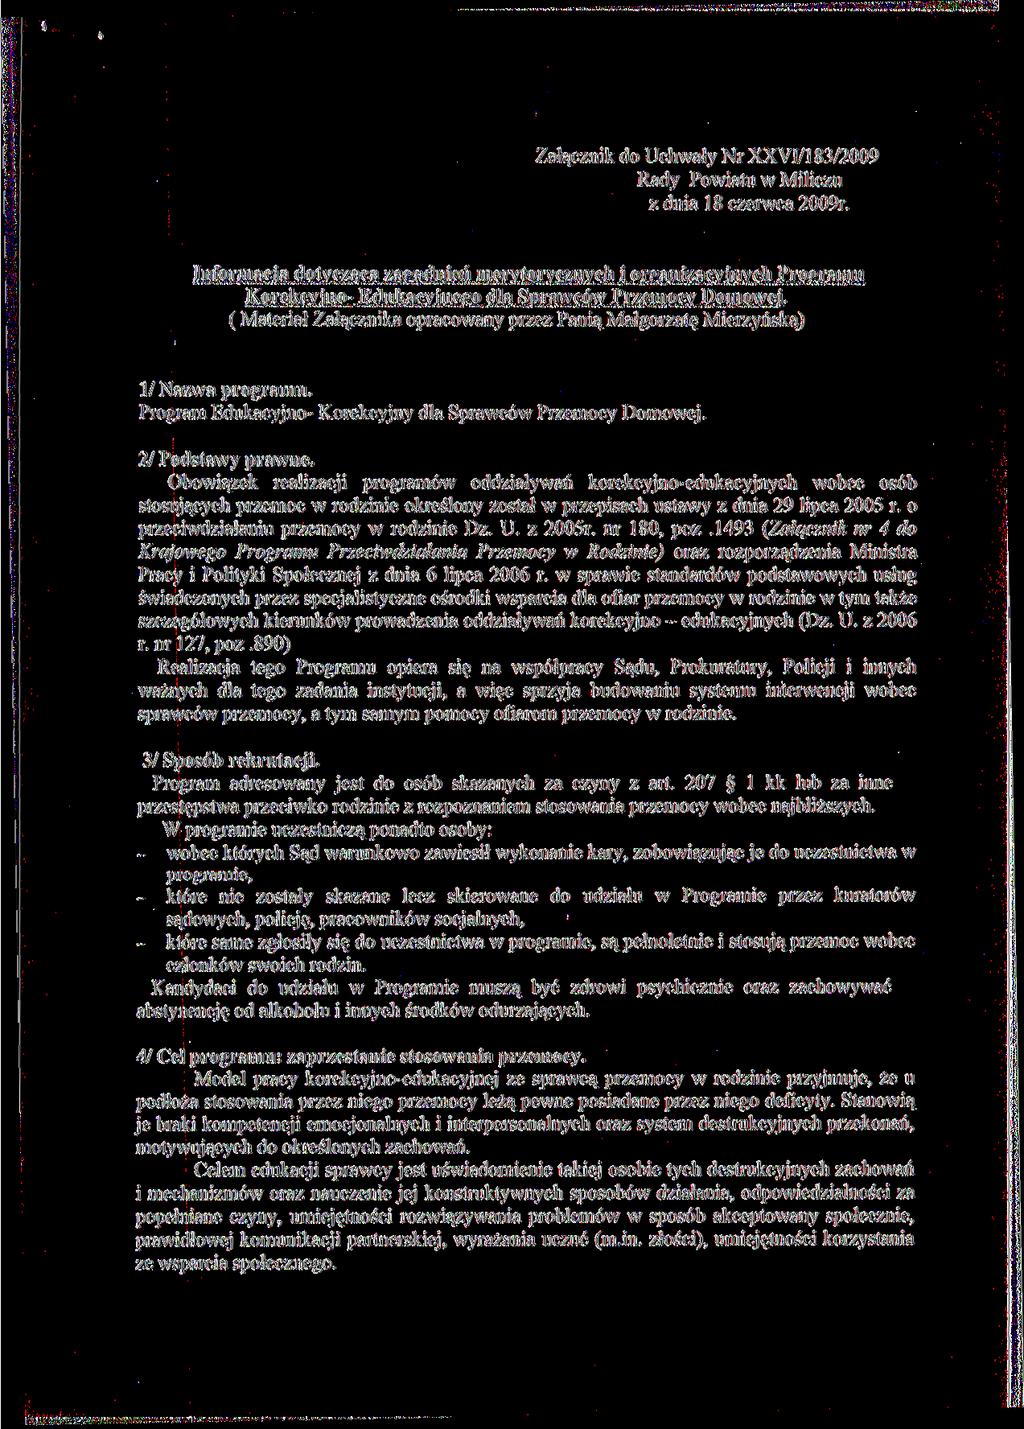 Załącznik do Uchwały Nr XXVI/183/2009 Rady Powiatu w Miliczu z dnia 18 czerwca 2009r.